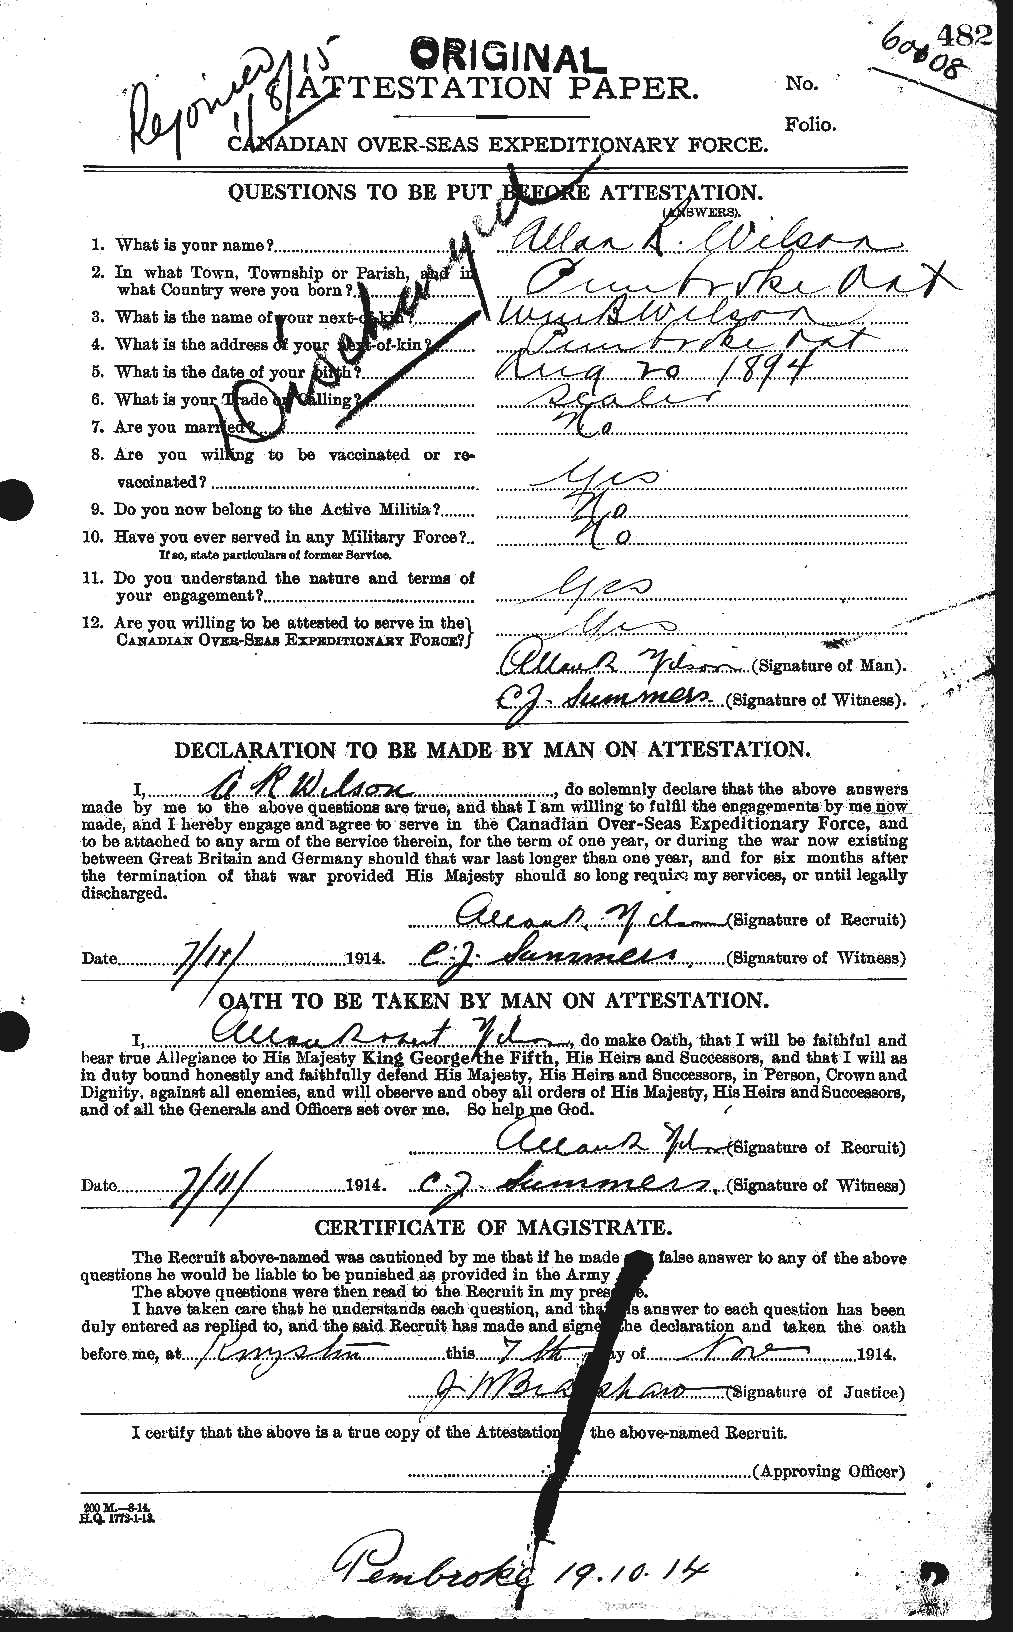 Dossiers du Personnel de la Première Guerre mondiale - CEC 677264a